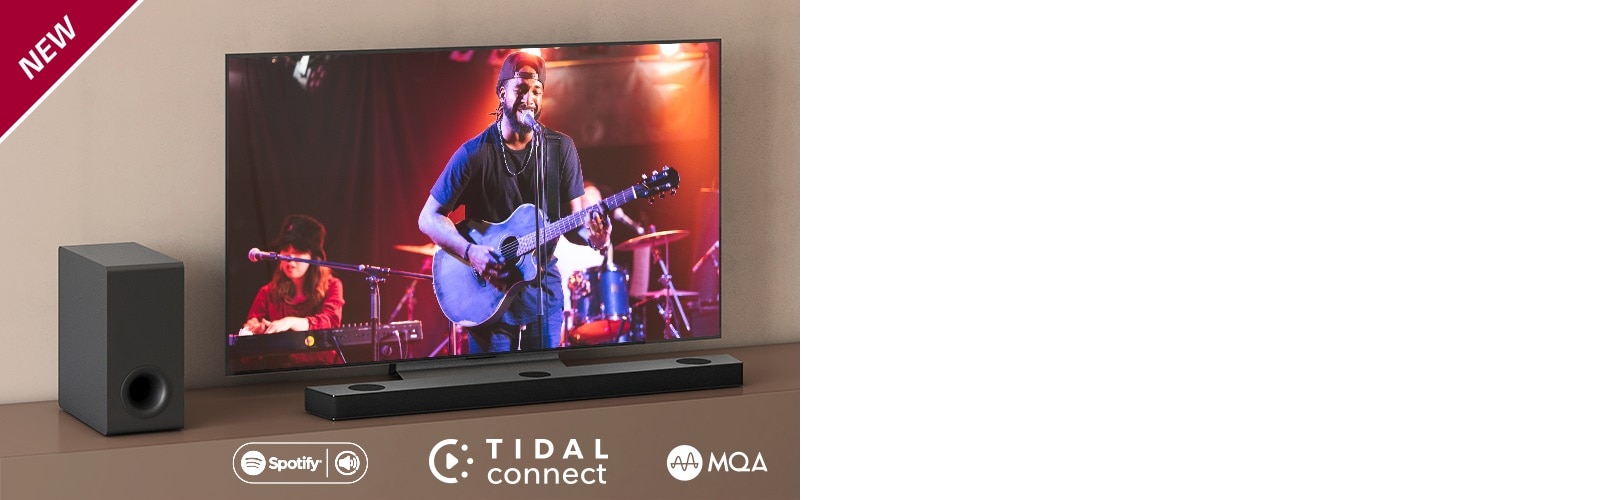 Ein LG TV steht auf dem braunen Regal, eine LG Sound Bar S90QY ist davor platziert. Ein Subwoofer steht links vom Fernseher. Auf dem Bildschirm läuft ein Konzert. In der linken oberen Ecke steht „NEU“.